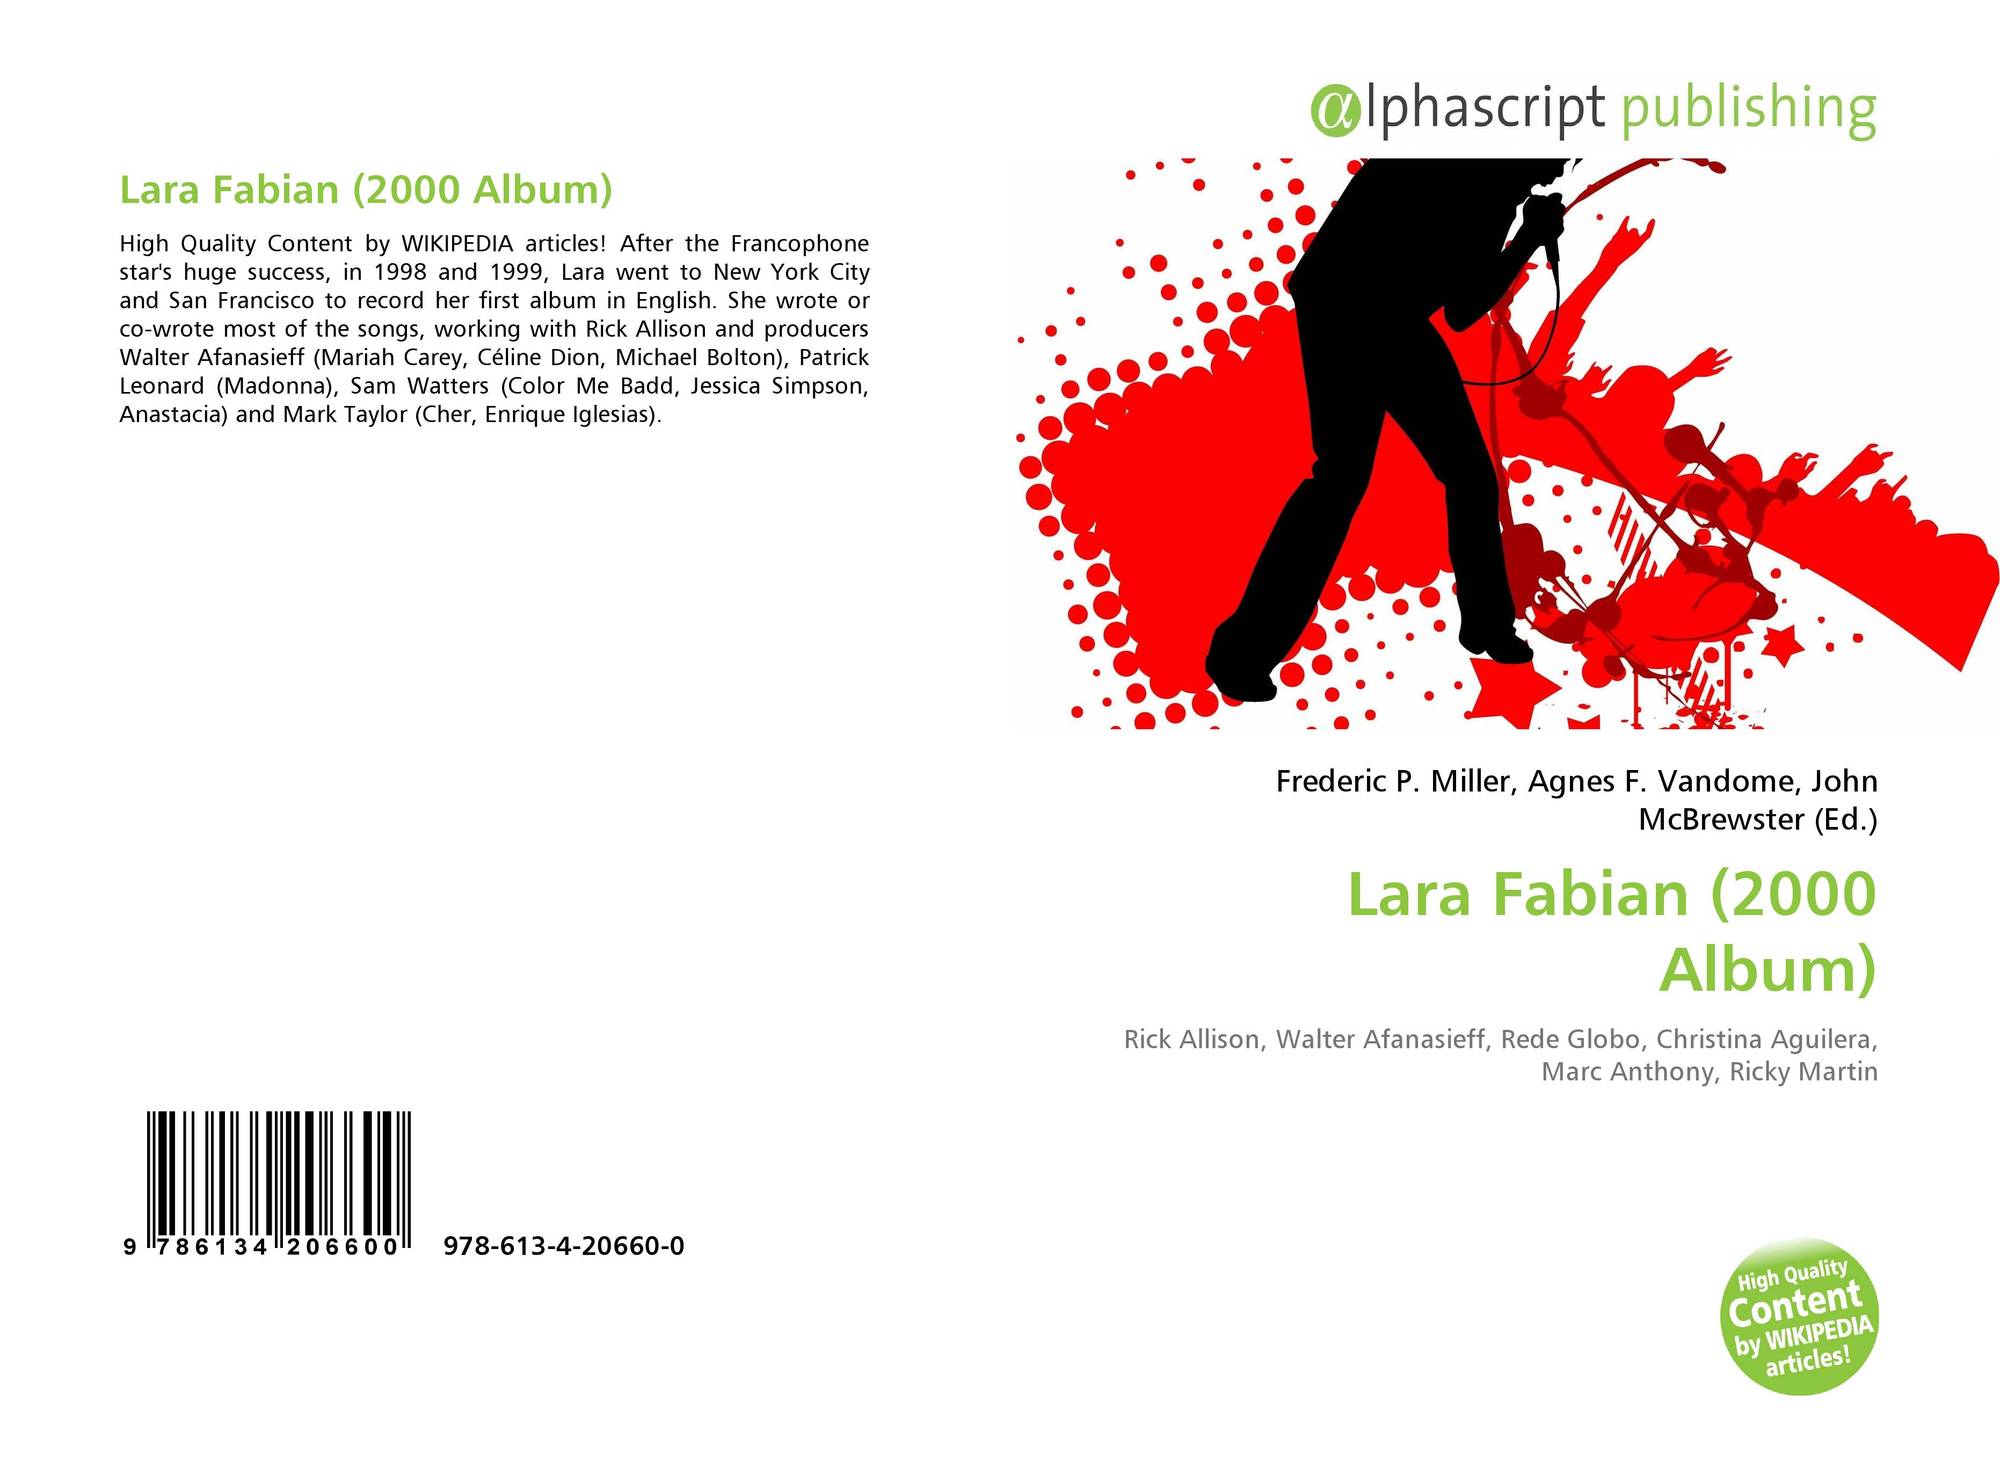 Lara Fabian 00 Album 978 613 4 660 0